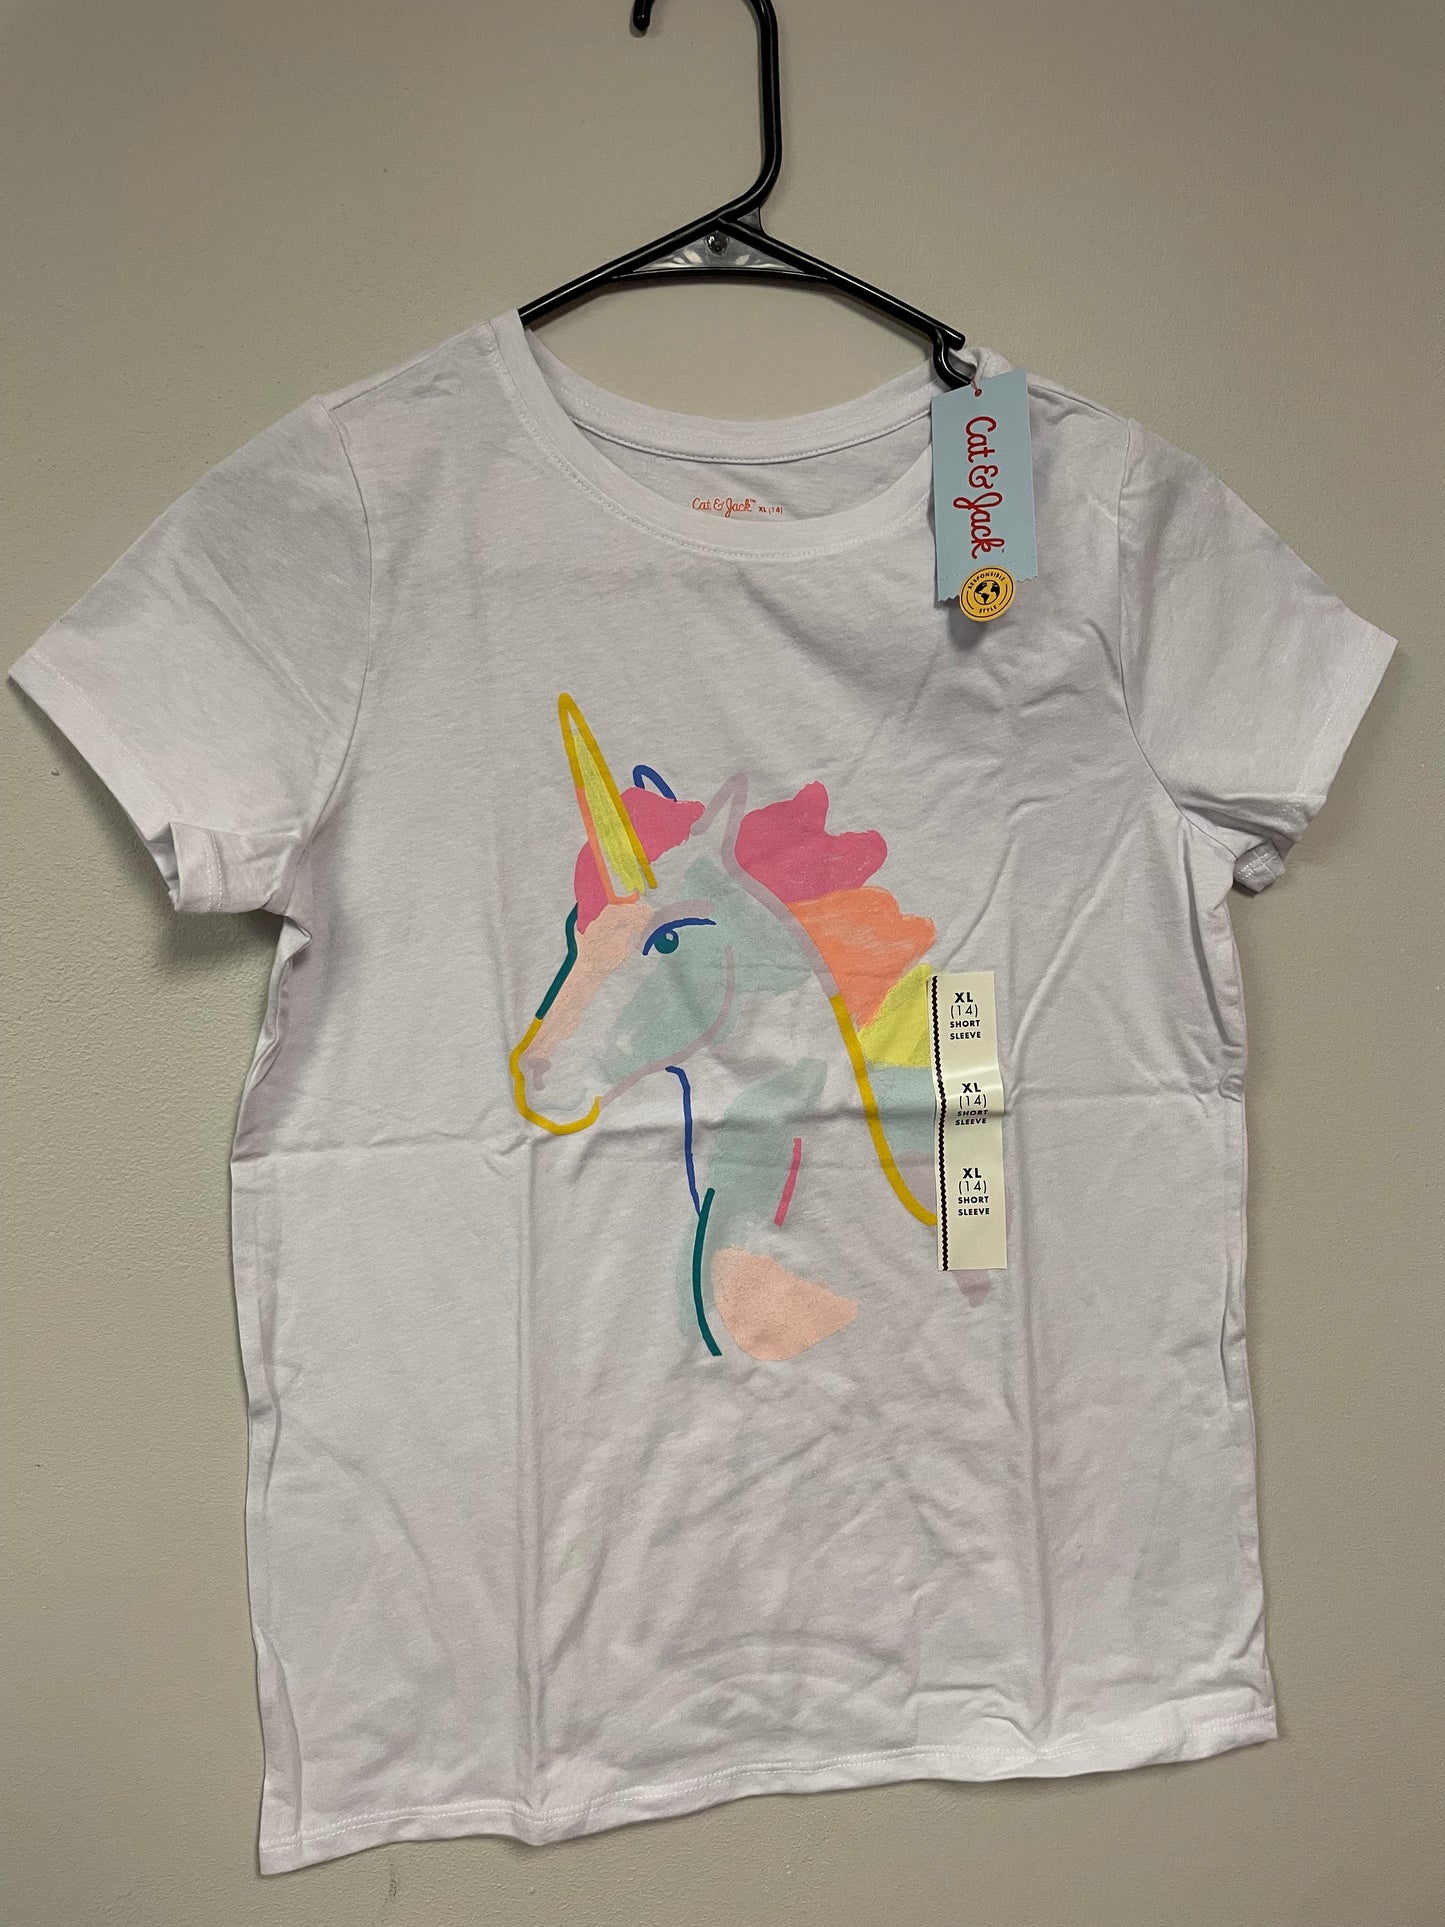 New Girl XL 14 short sleeve unicorn cat and jack shirts